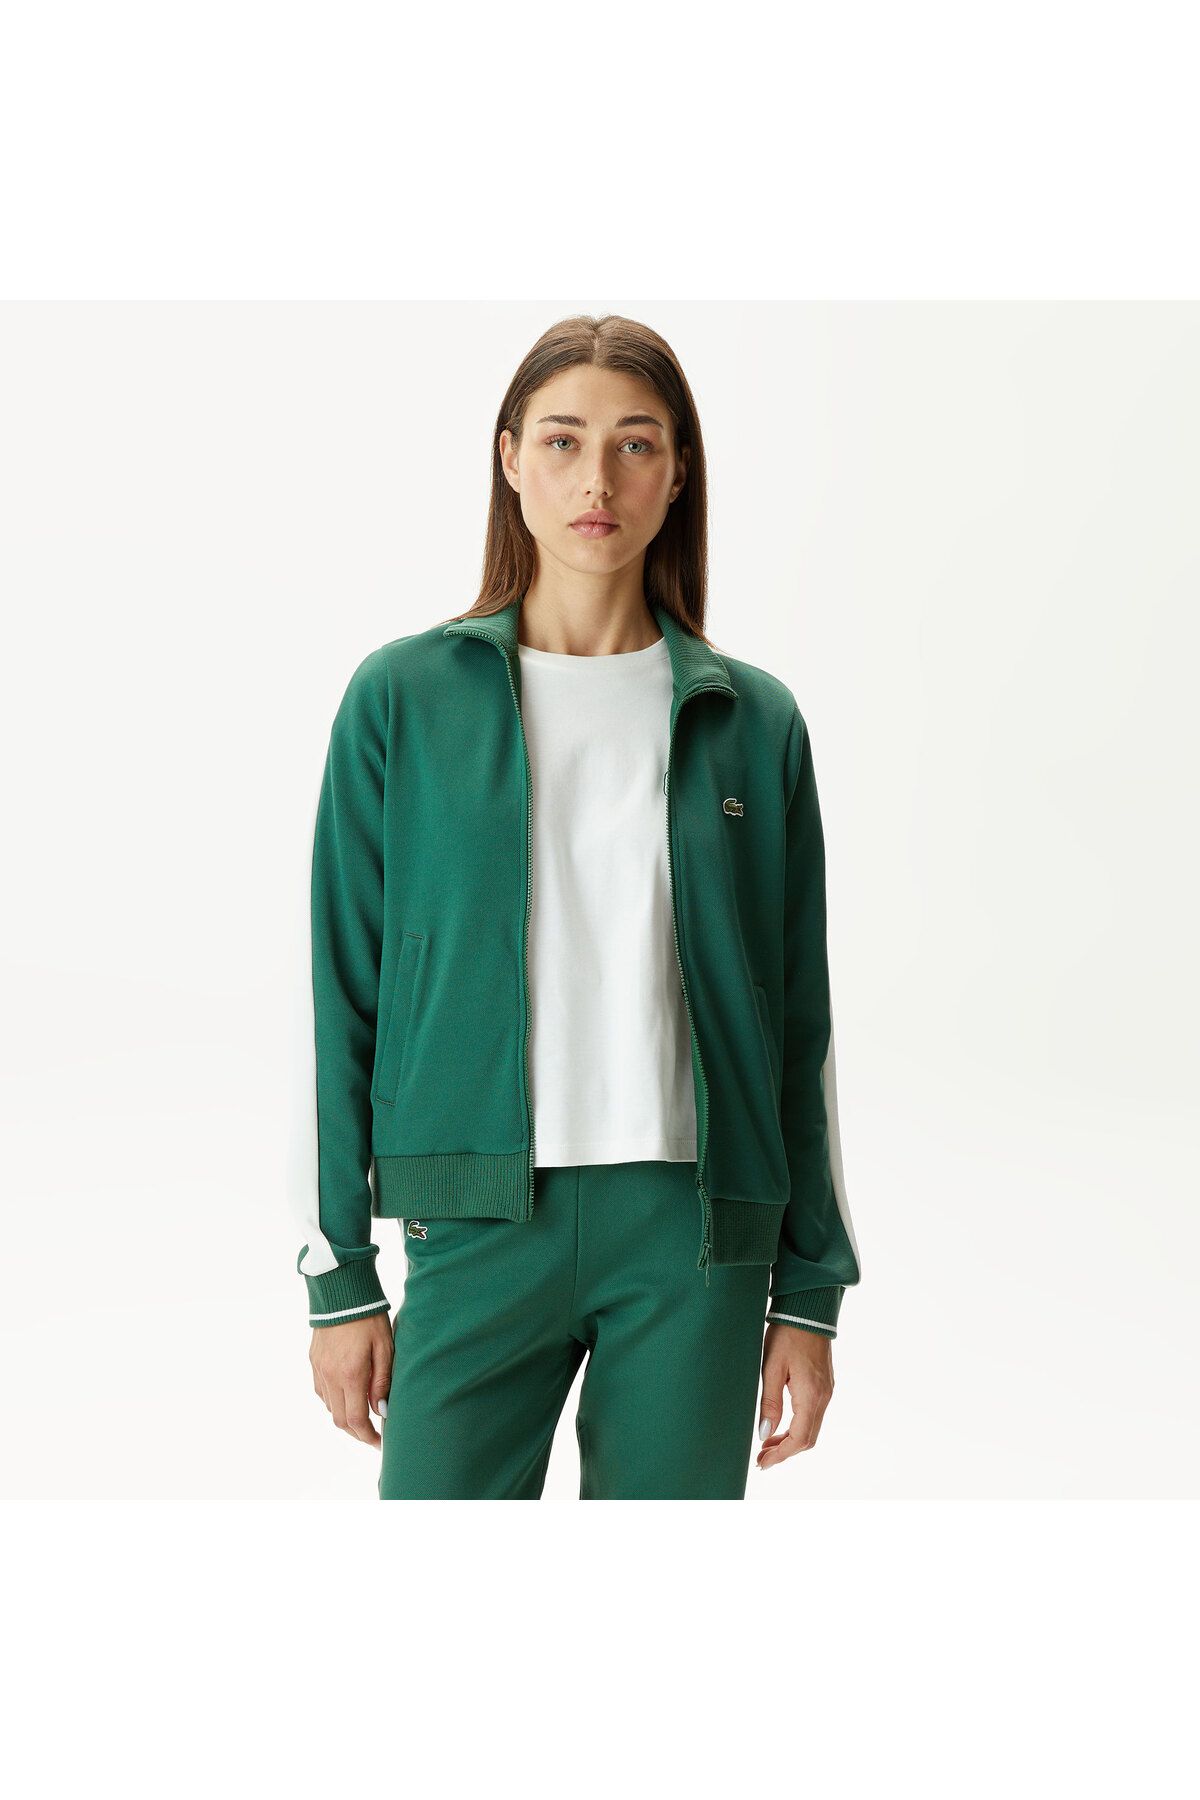 Lacoste Kadın Regular Fit Fermuarlı Yeşil Sweatshirt